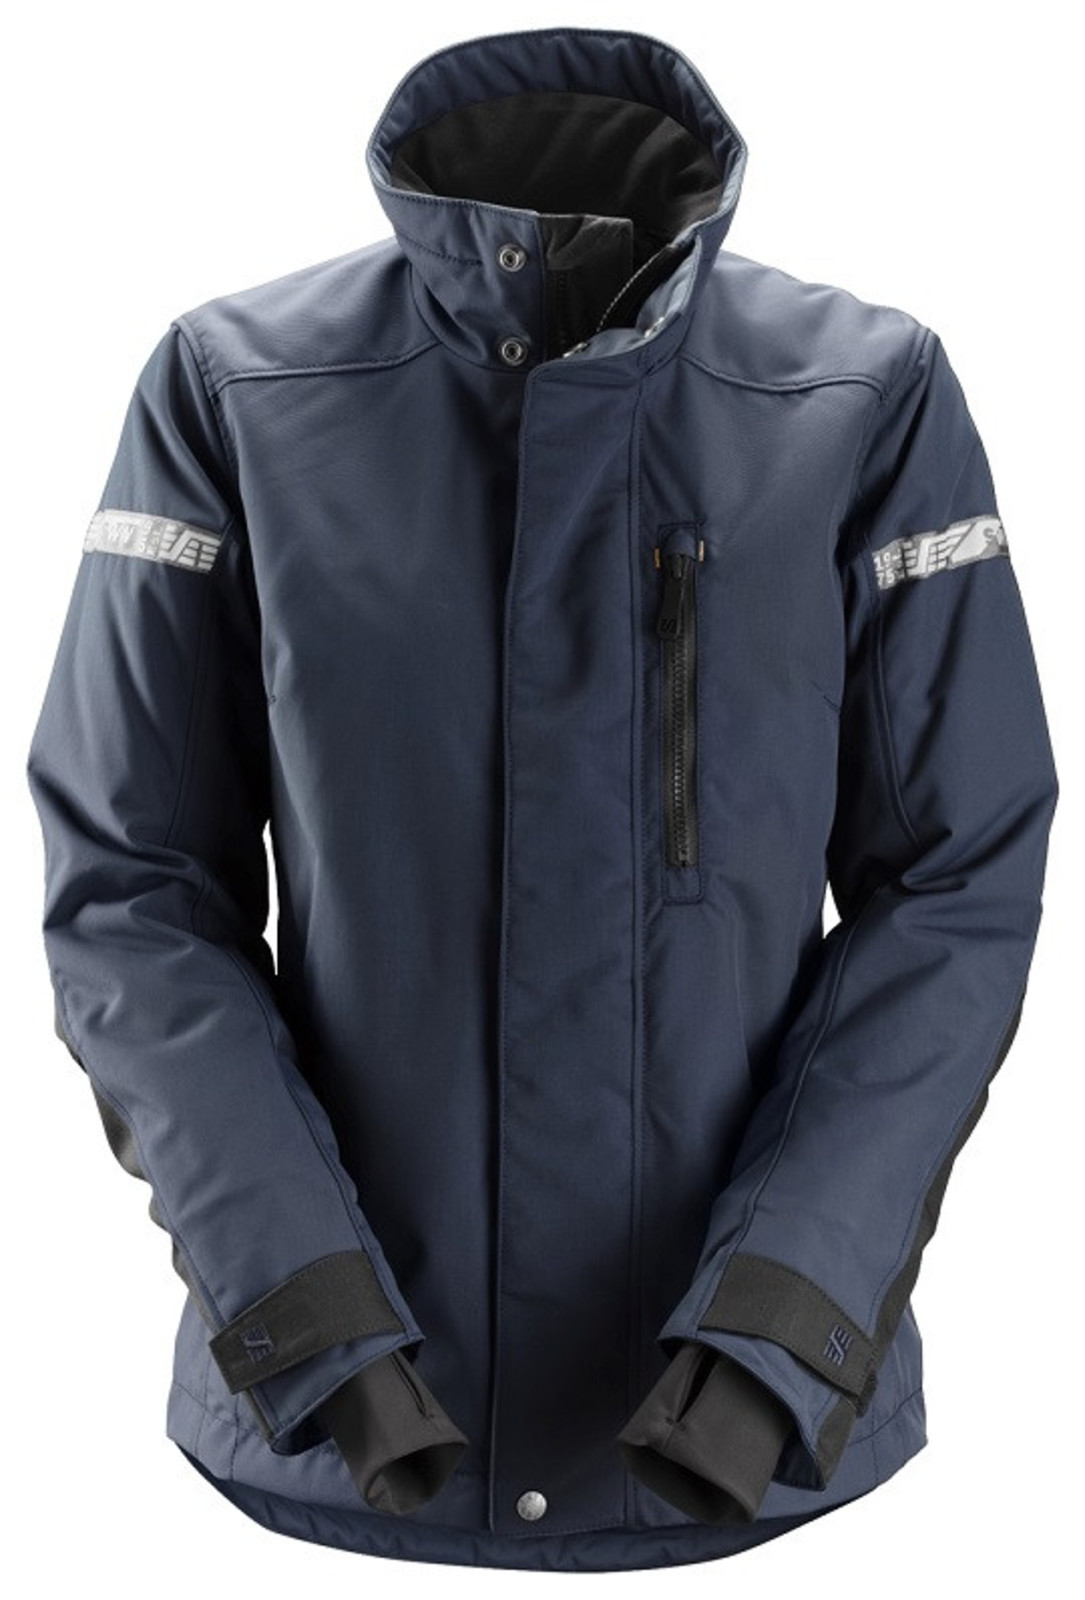 Dámska zimná bunda Snickers® AllroundWork 37.5® - veľkosť: XL, farba: navy